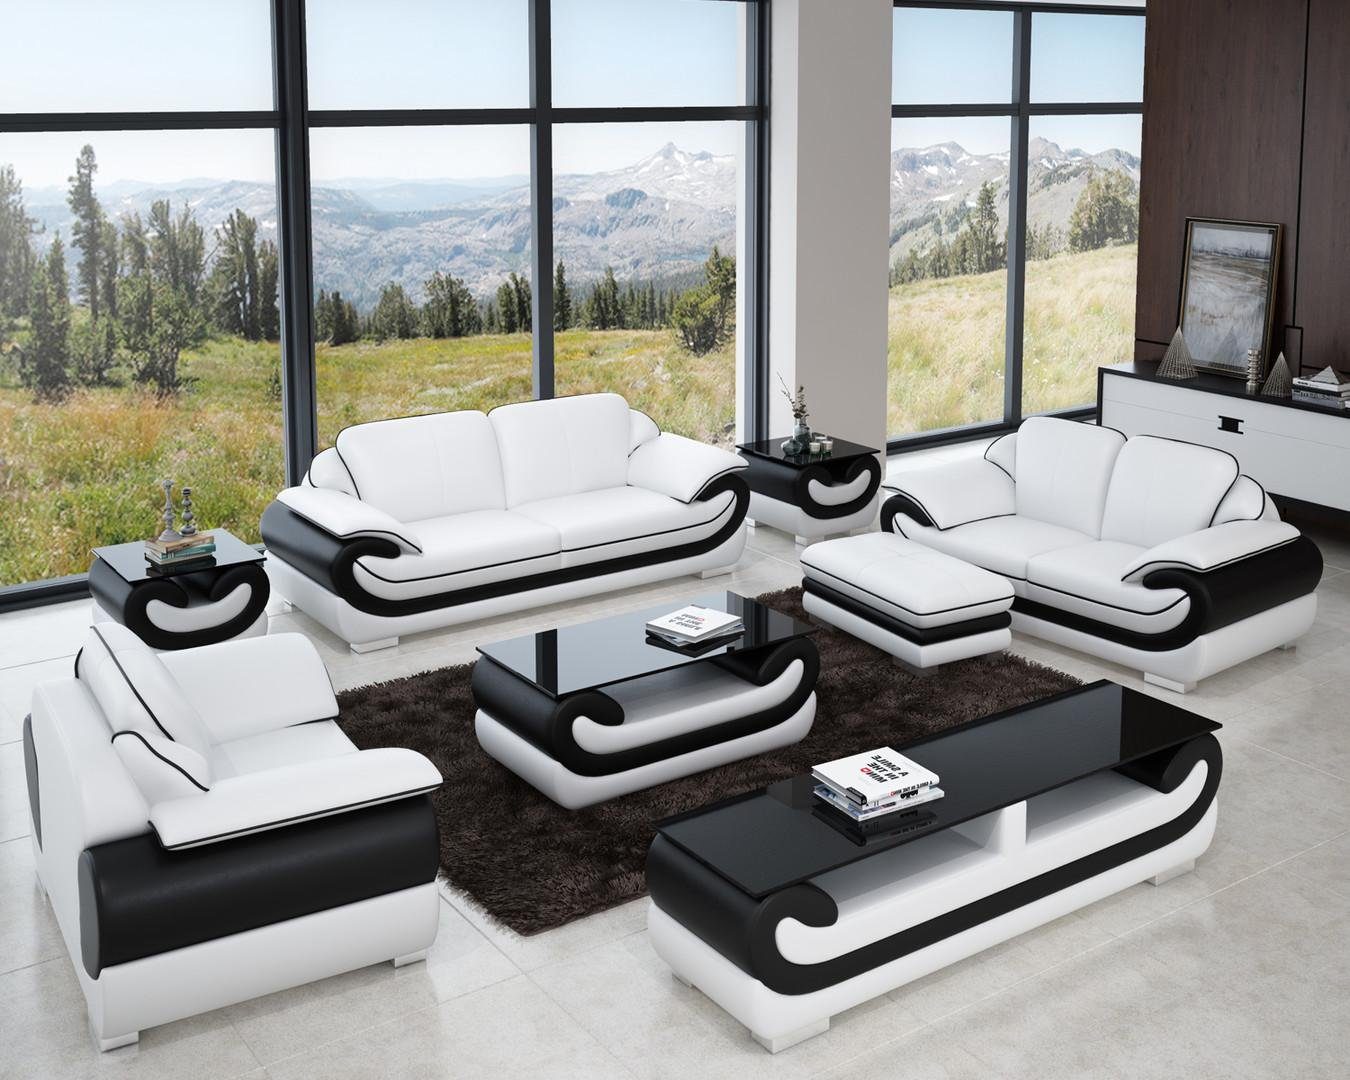 JVmoebel Sofa Sofas 3+2+1 Sitzer Set Design Sofas Polster Couchen Leder Relax, Made in Europe Weiß/Schwarz